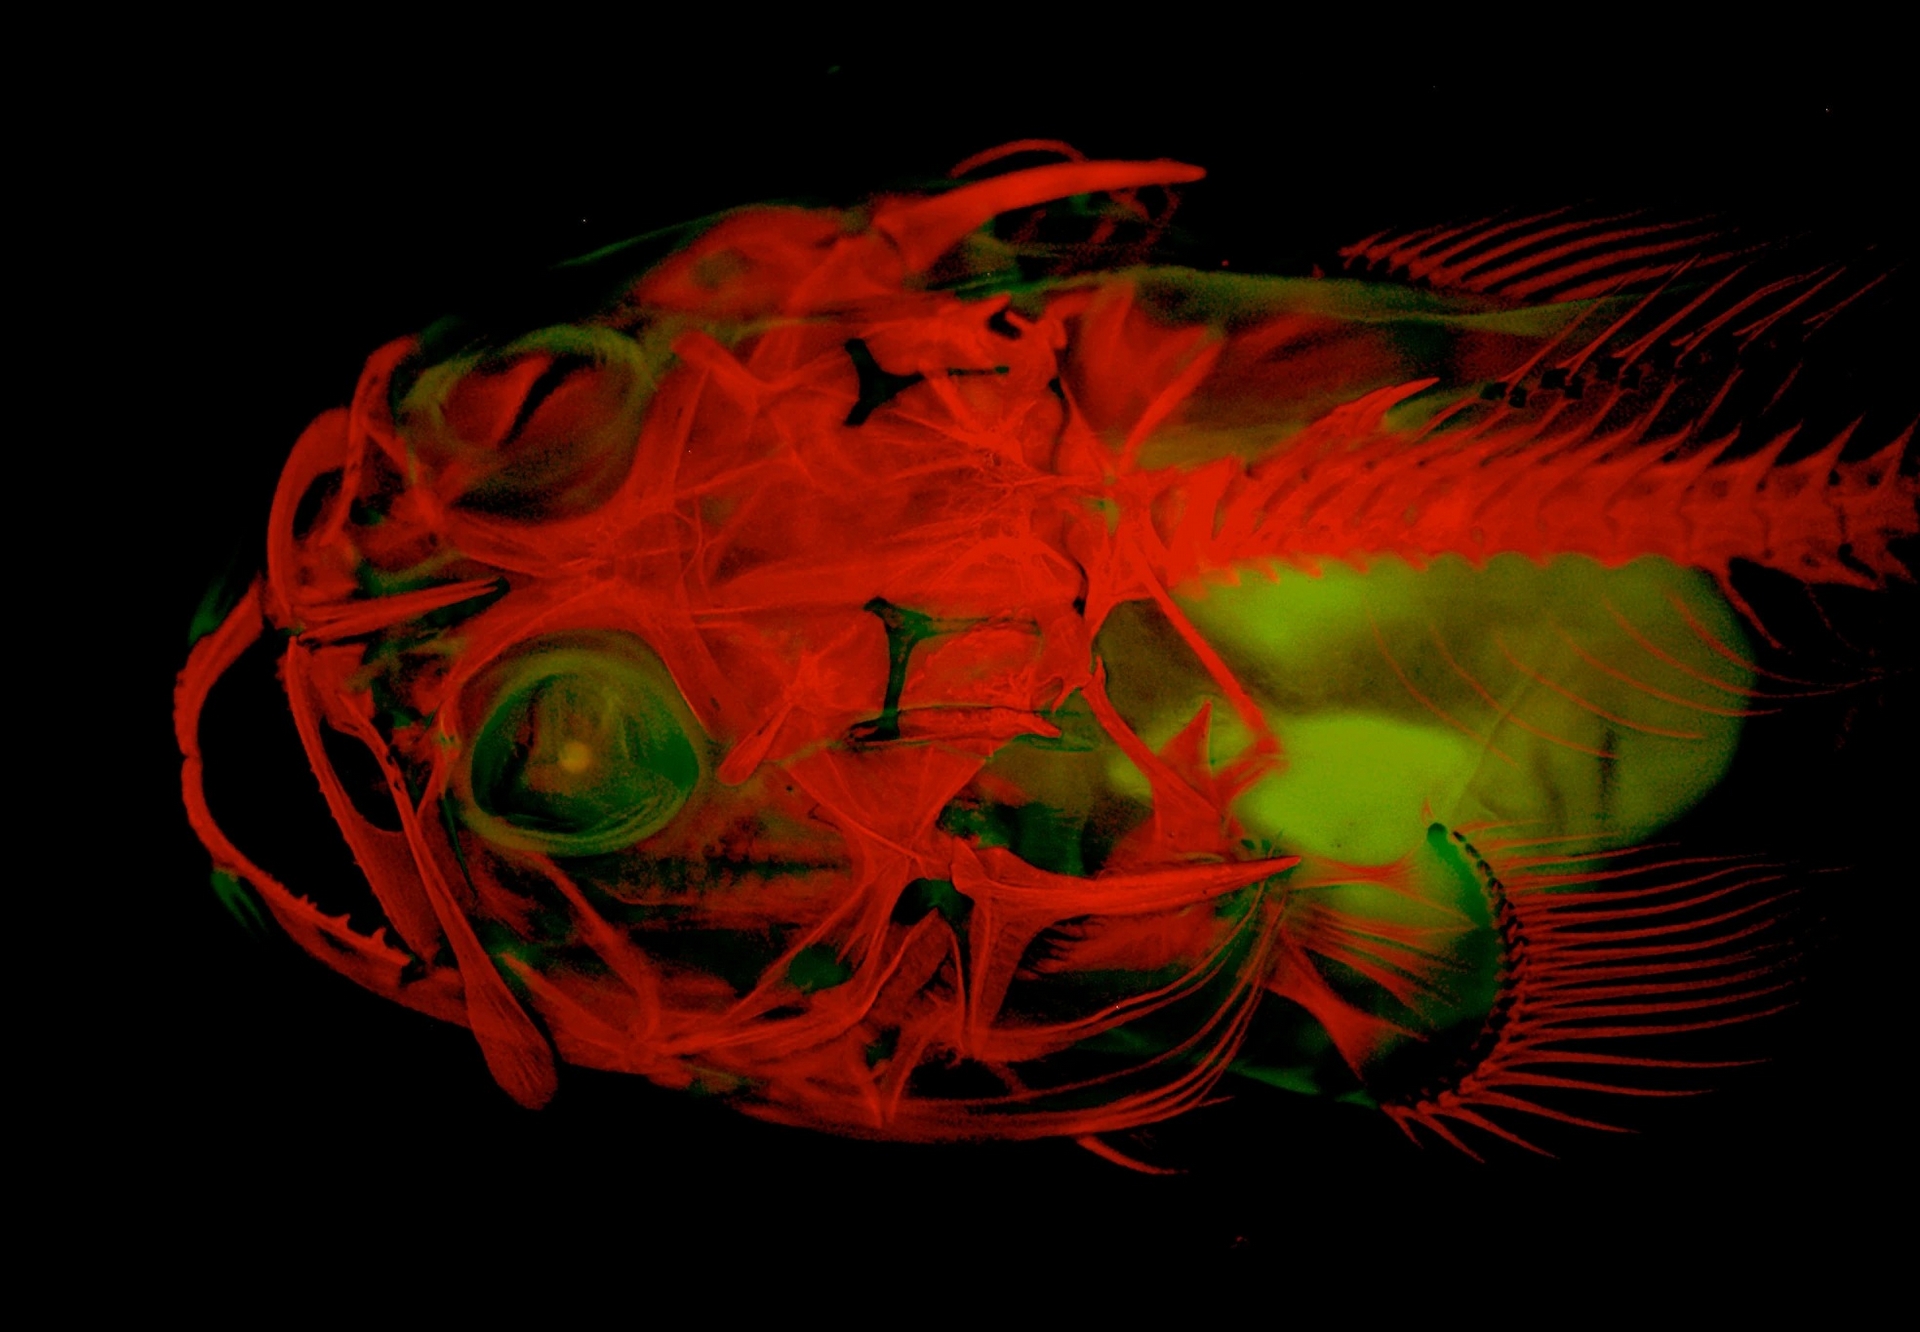 平鰭美洲蟾魚（plainfin midshipman）不僅是一種會唱情歌的底棲魚類，天生還會發出生物螢光。相片中呈現了紅色染劑發出的紅光，以及平鰭美洲蟾魚原本綠色的天然螢光。 PHOTOGRAPH BY LEO SMITH, UNIVERSITY OF KANSAS 